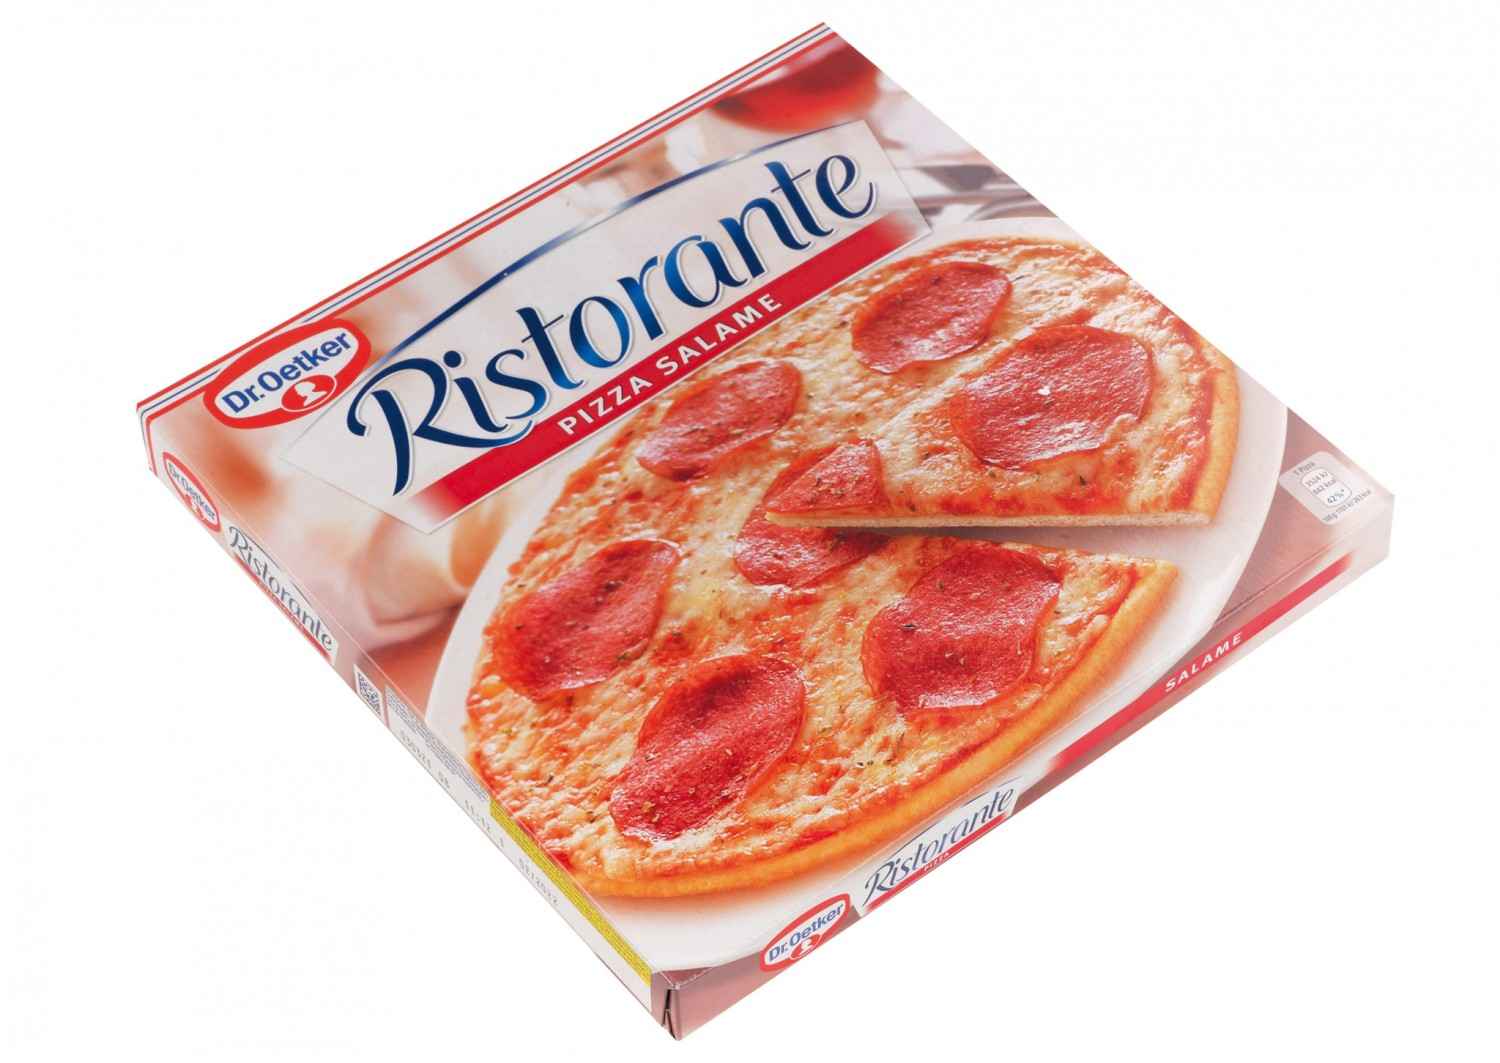 Tiefkühl-Pizza Dr. Oetker Ristorante Pizza Salame im Test, Bild 6